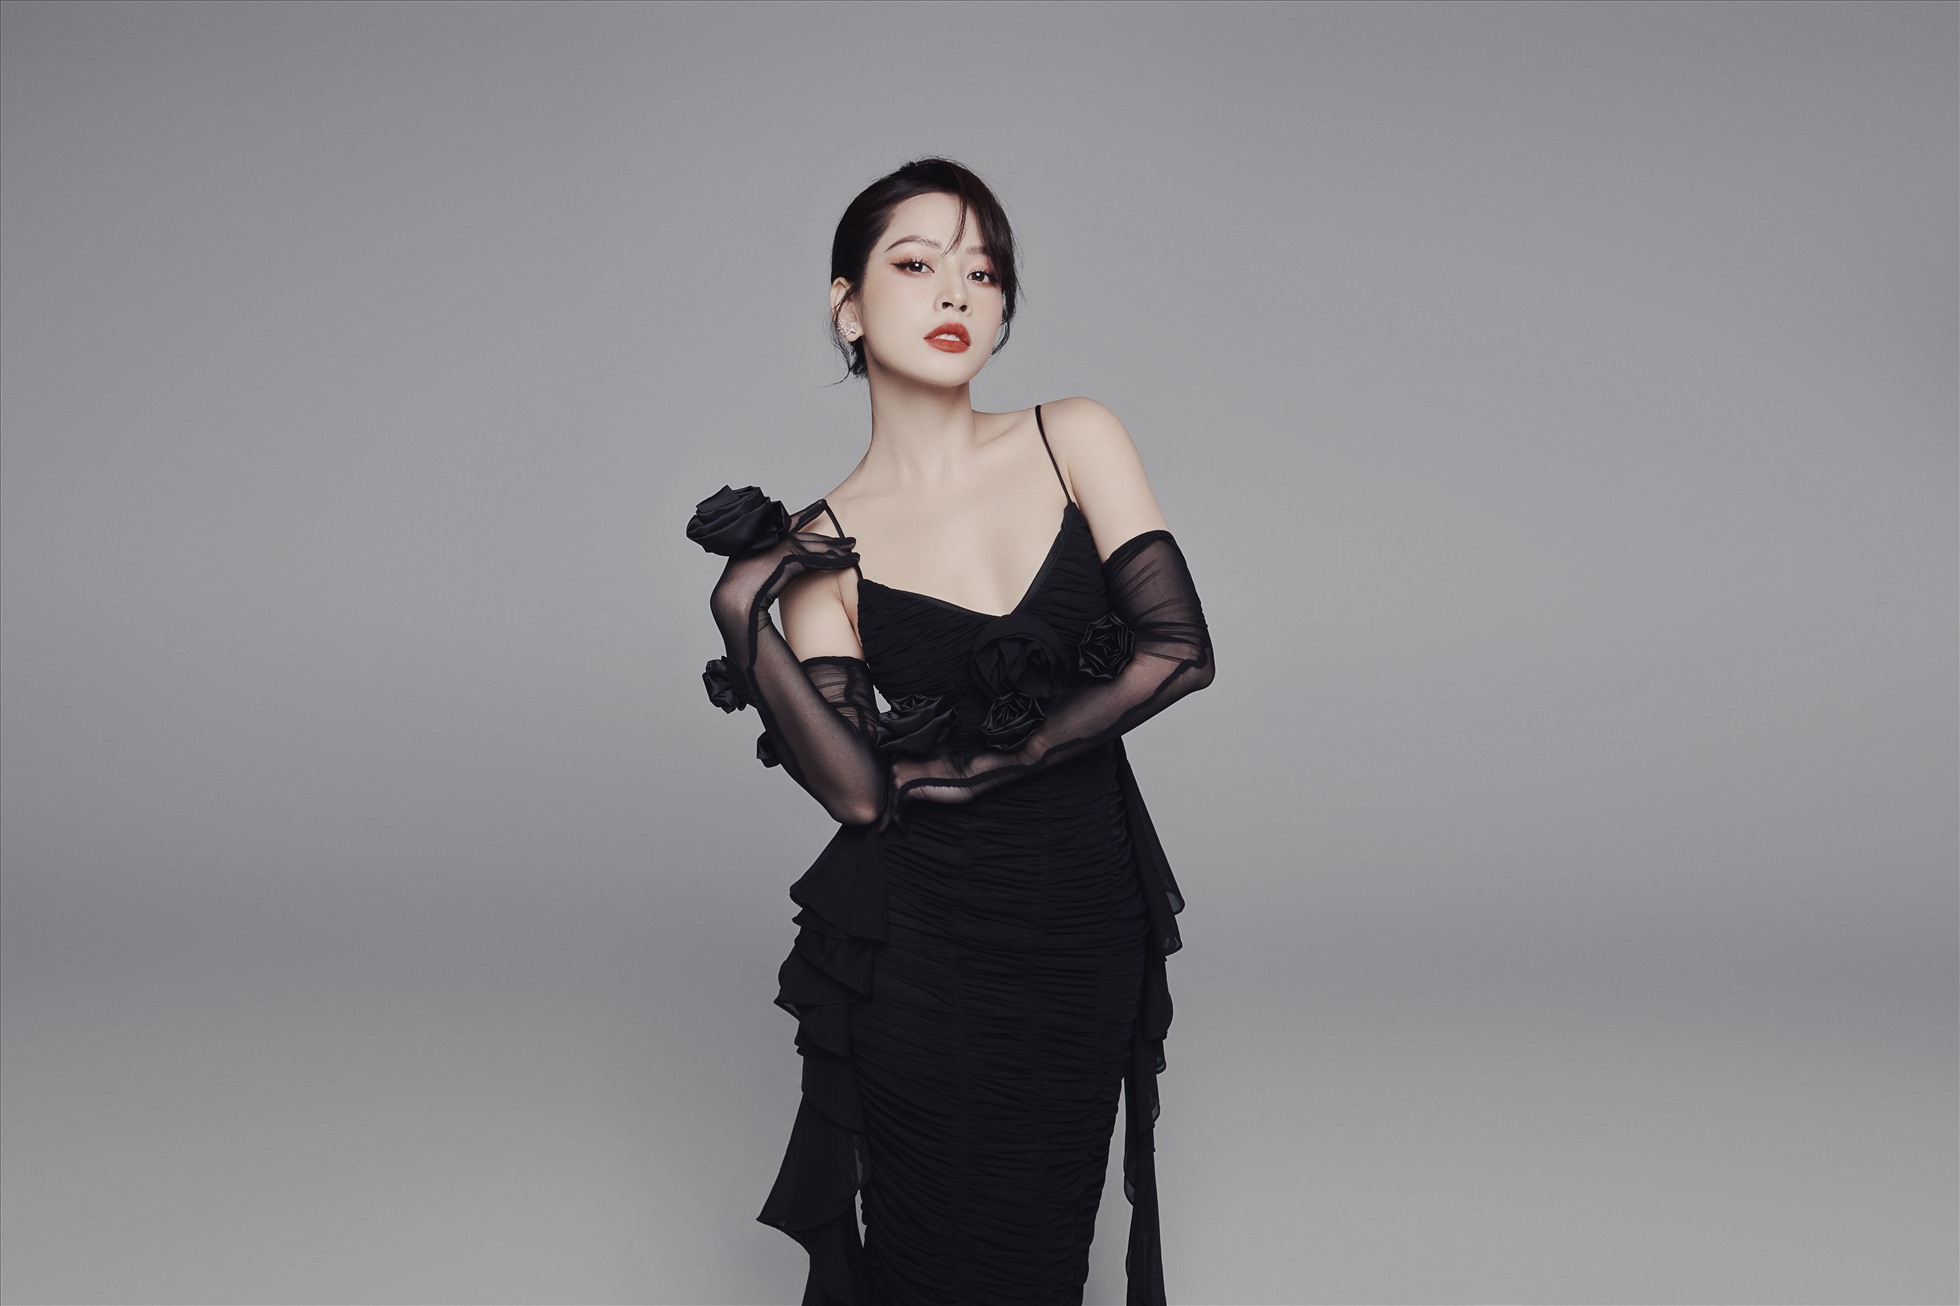 Năm 2022, Chi Pu vào vai Linh trong phim “Mười: Lời nguyền trở lạ“. Người đẹp đã xuất sắc giành giải thưởng “Nữ diễn viên được yêu thích nhất” tại Lễ trao giải Ngôi Sao Xanh 2022.